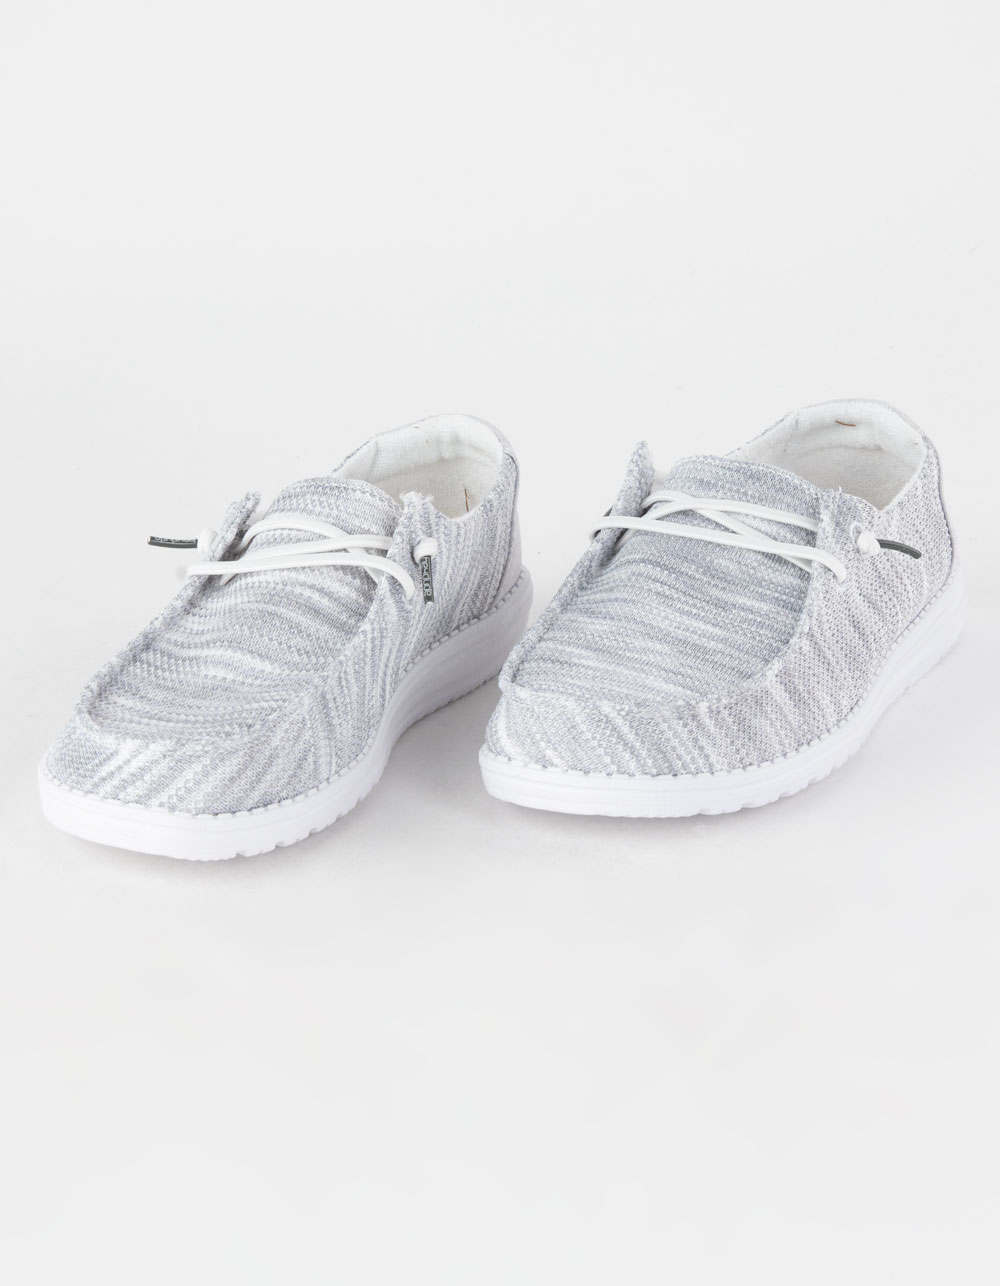 Wendy Sox Glacier Grey - Women's Casual Shoes